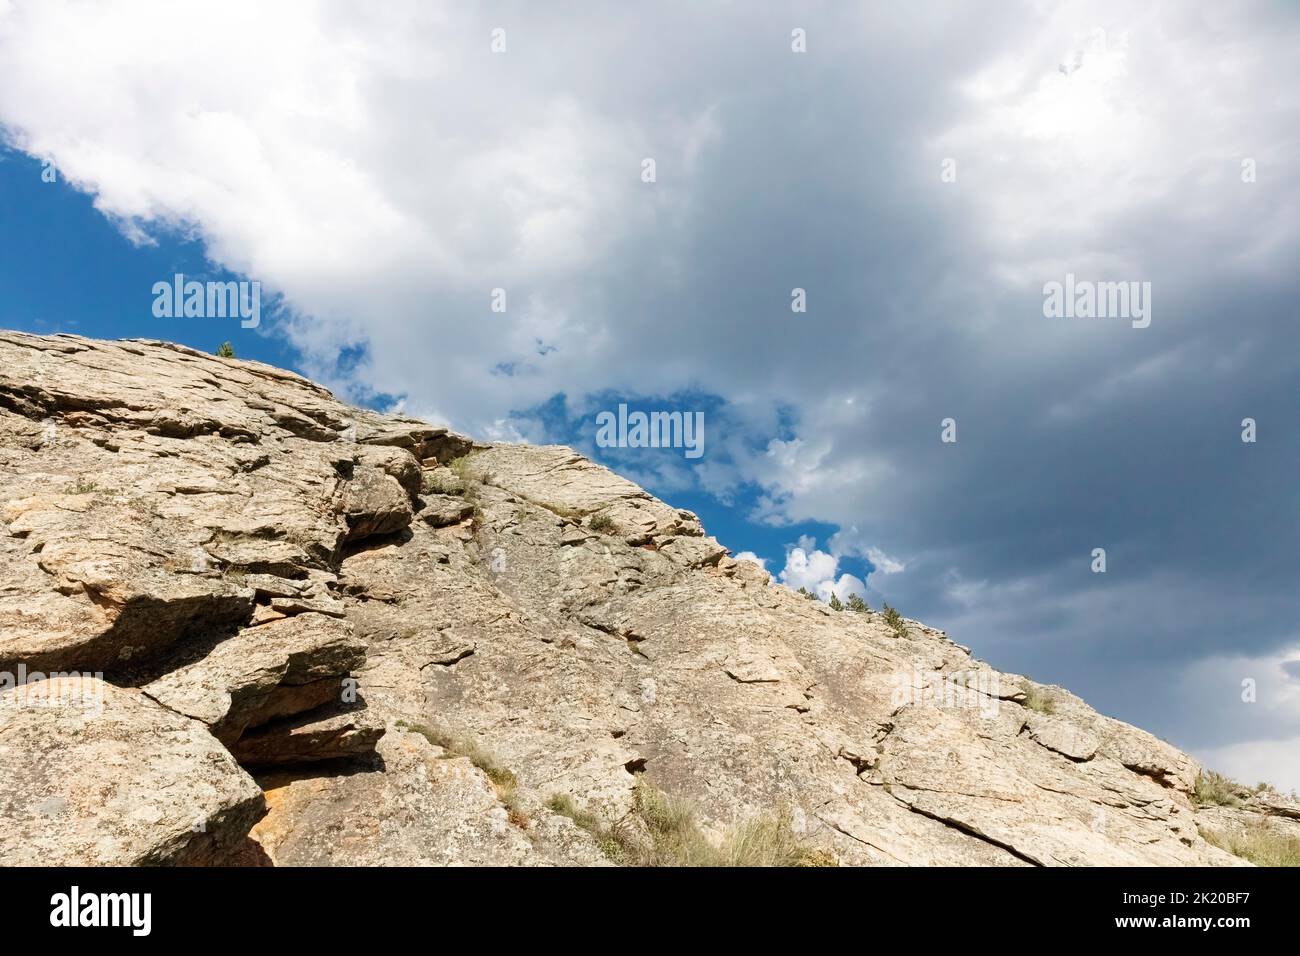 Rock meets Sky, Colorado, USA Stock Photo